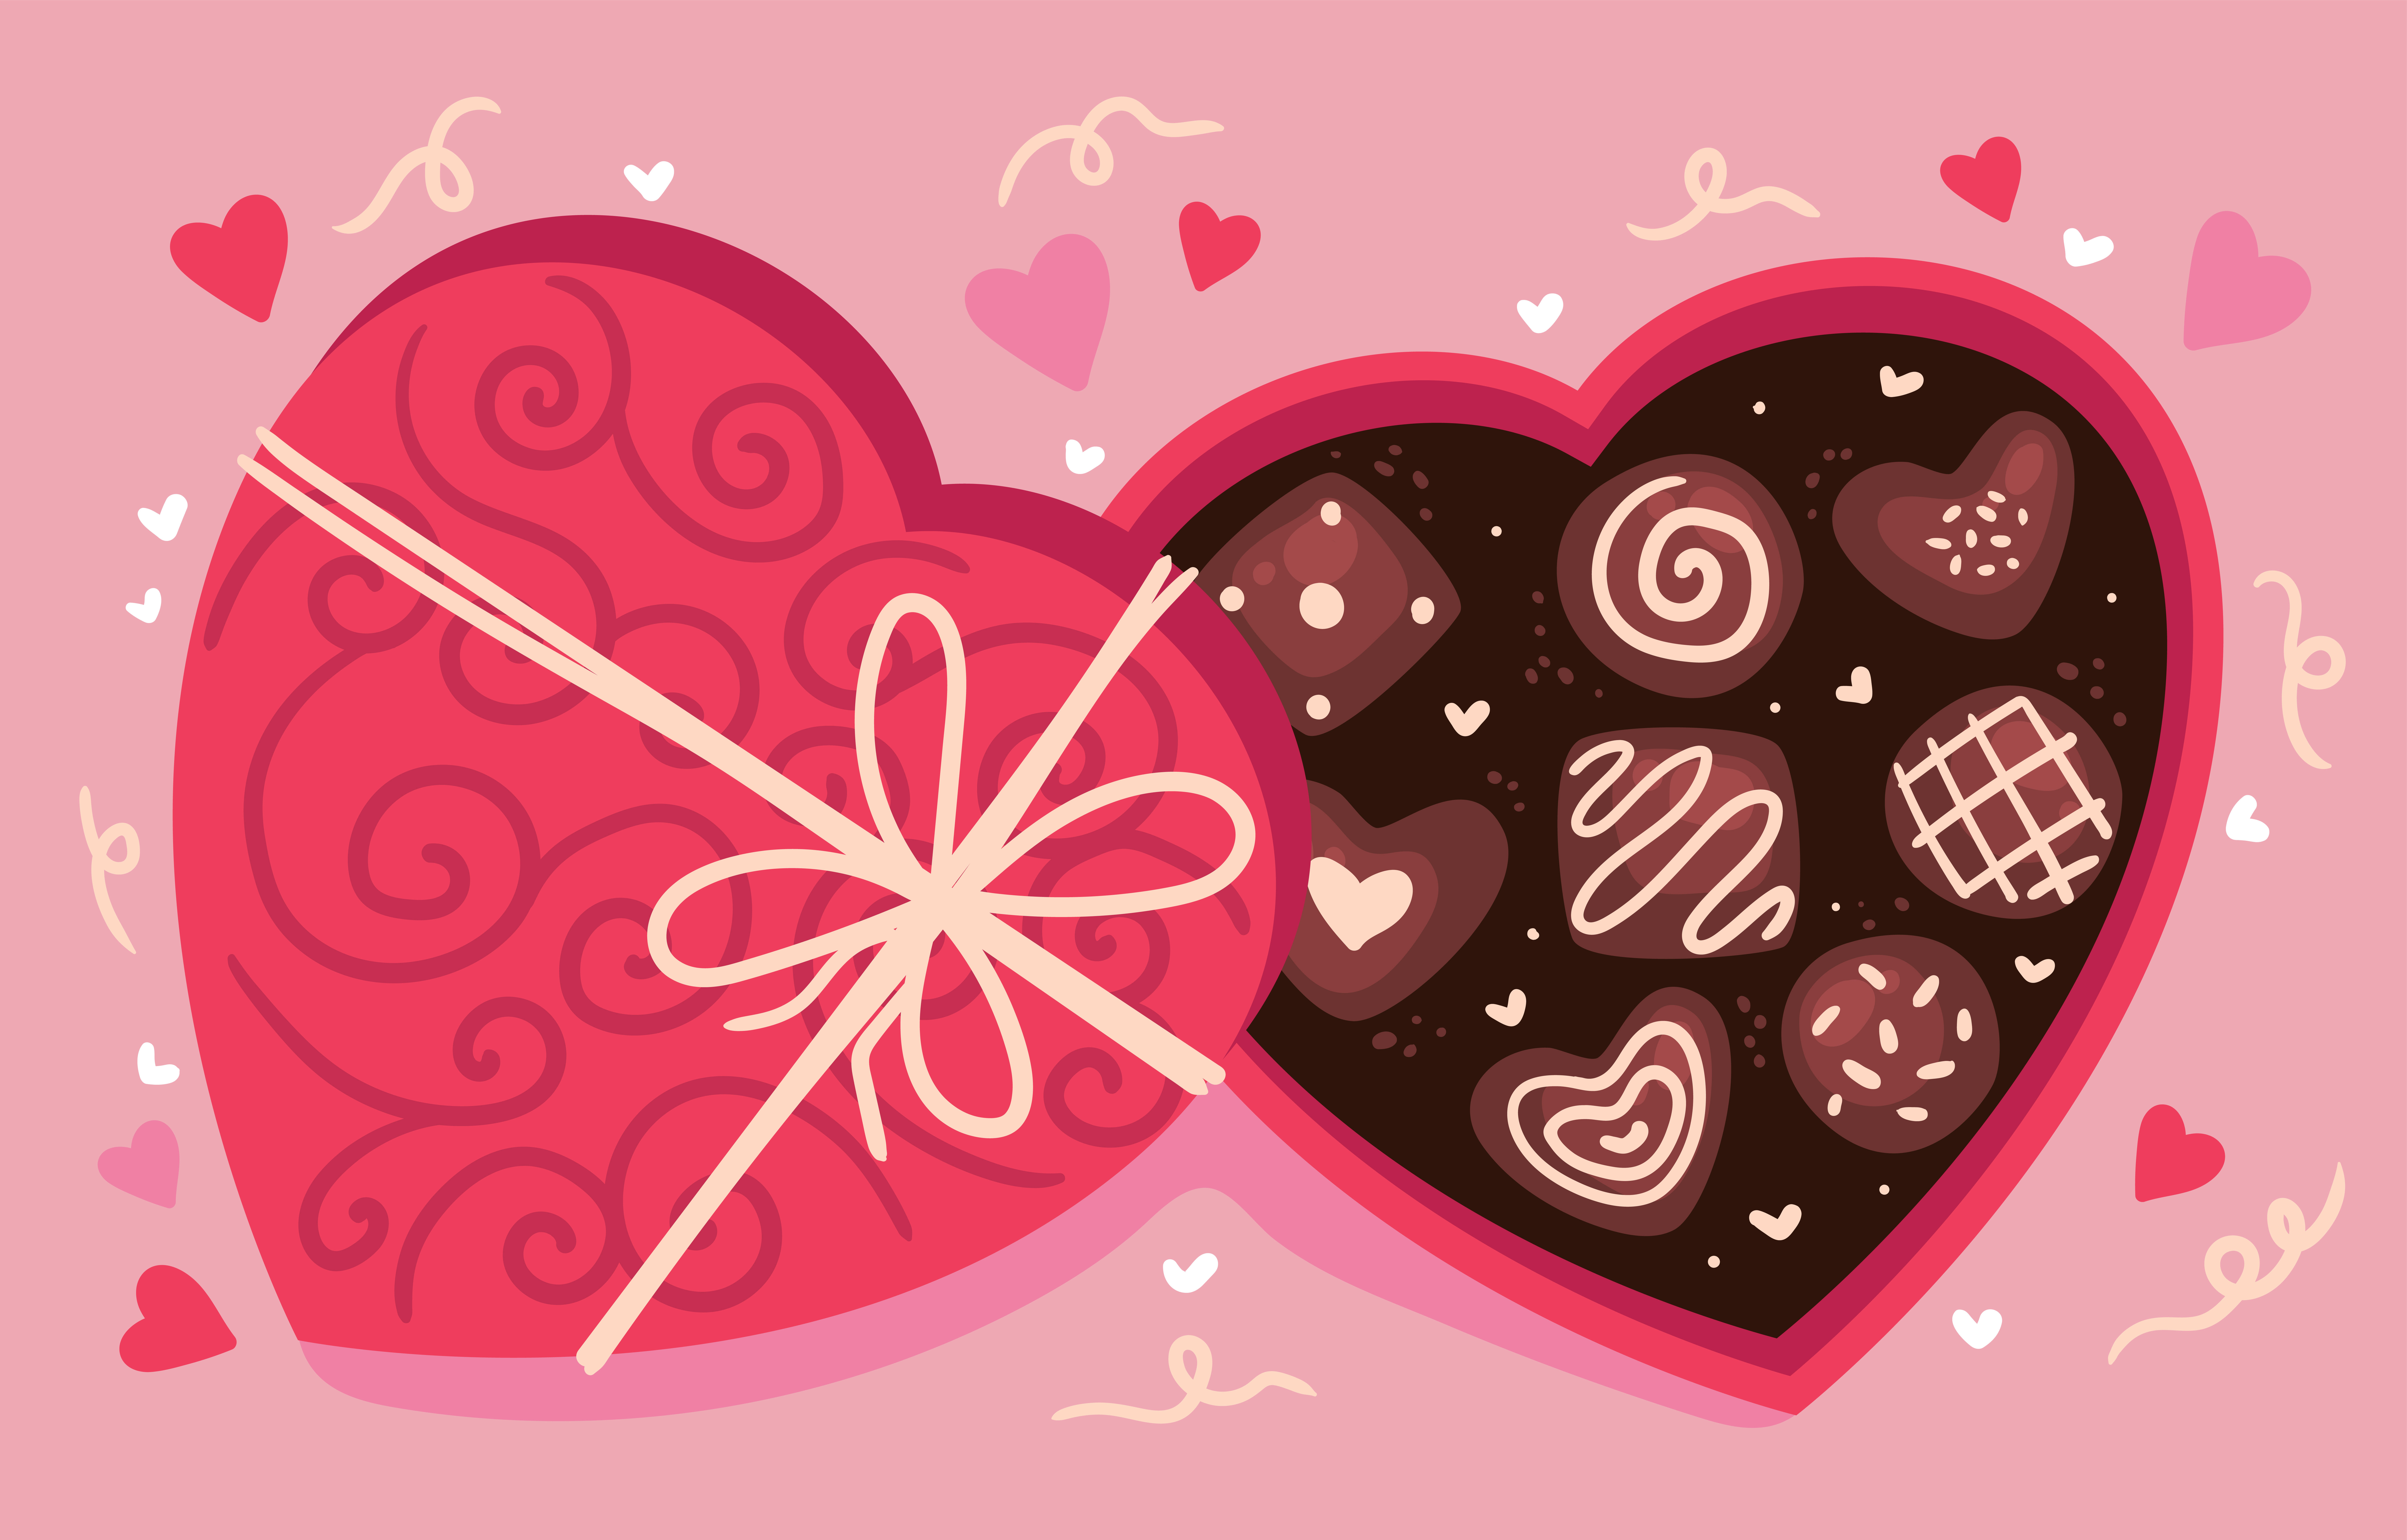 Vectores e ilustraciones de San valentin chocolate para descargar gratis